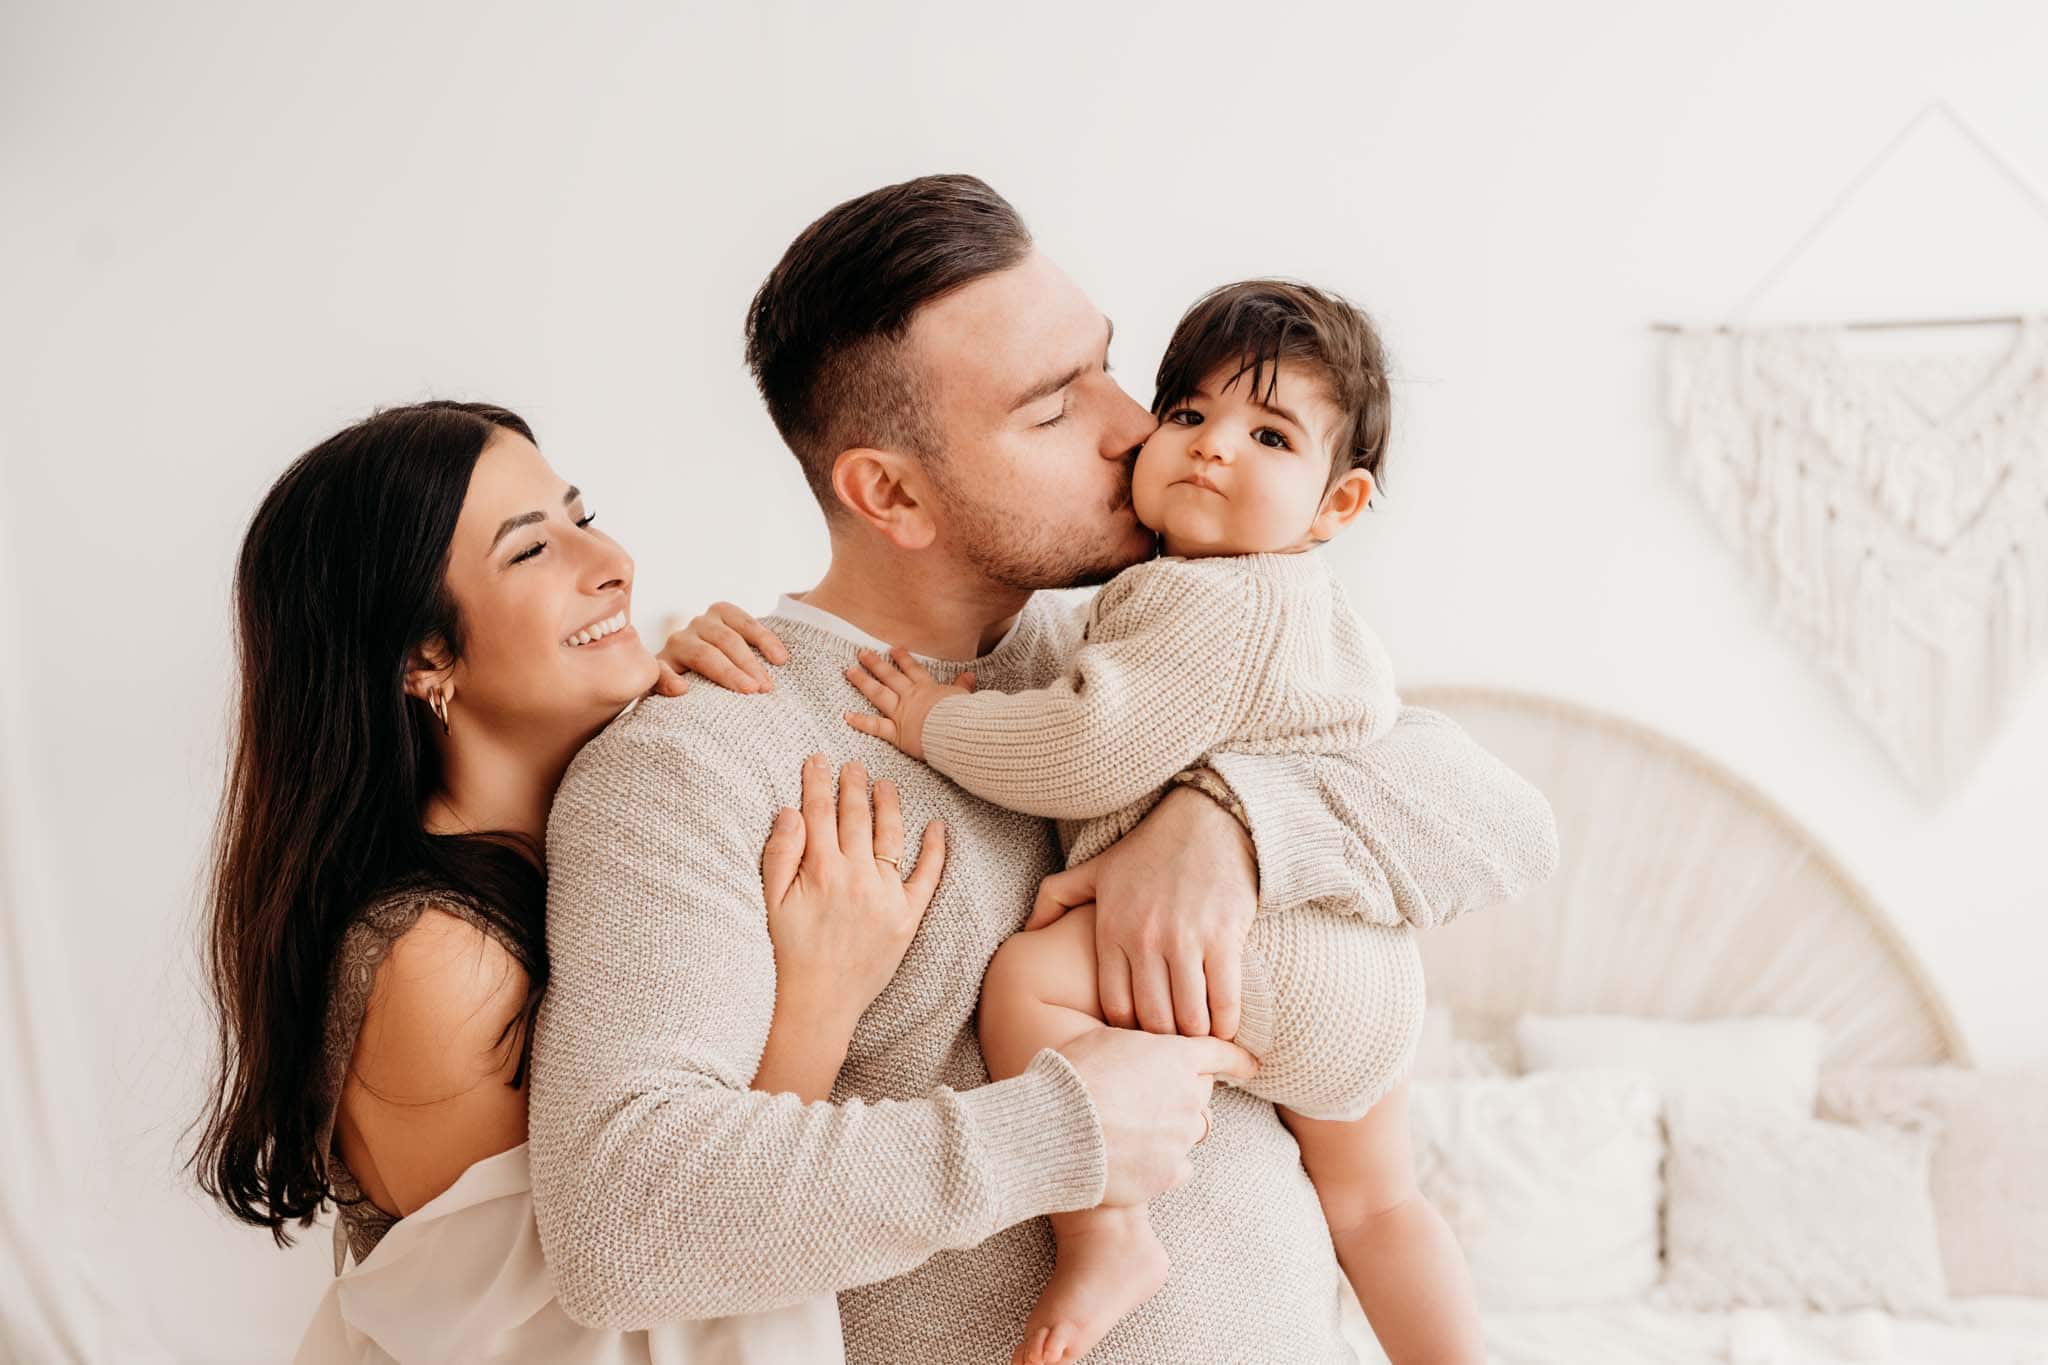 Papa küsst Baby auf die Backe beim Familienportrait